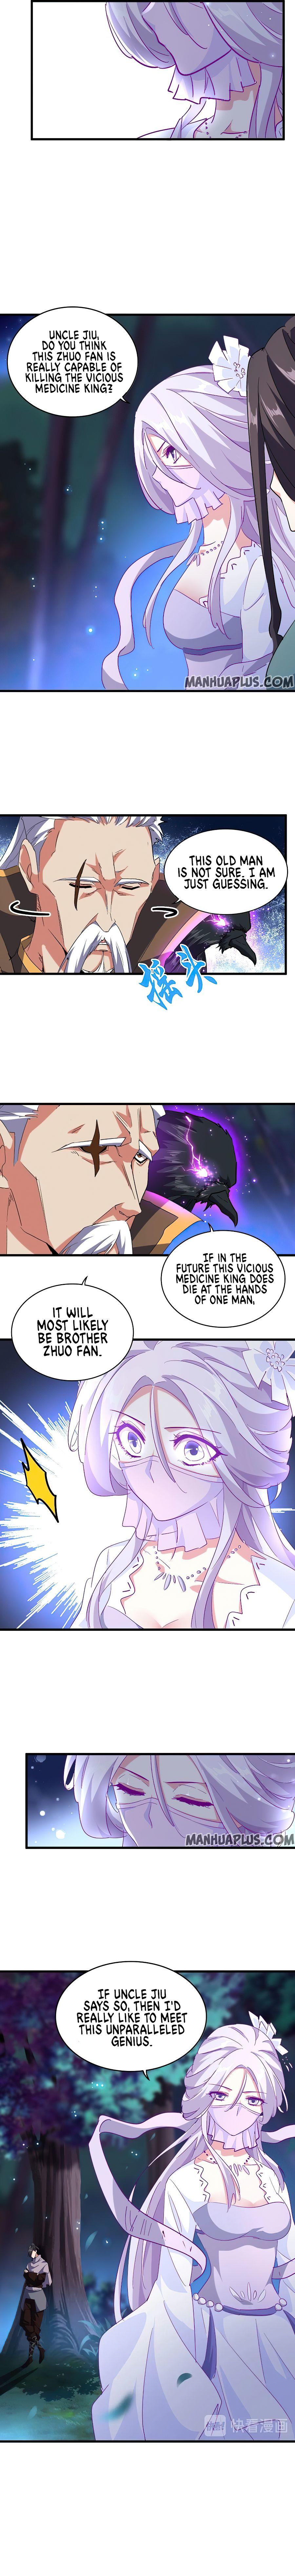 Magic Emperor Chapter 136 page 8 - Mangakakalot